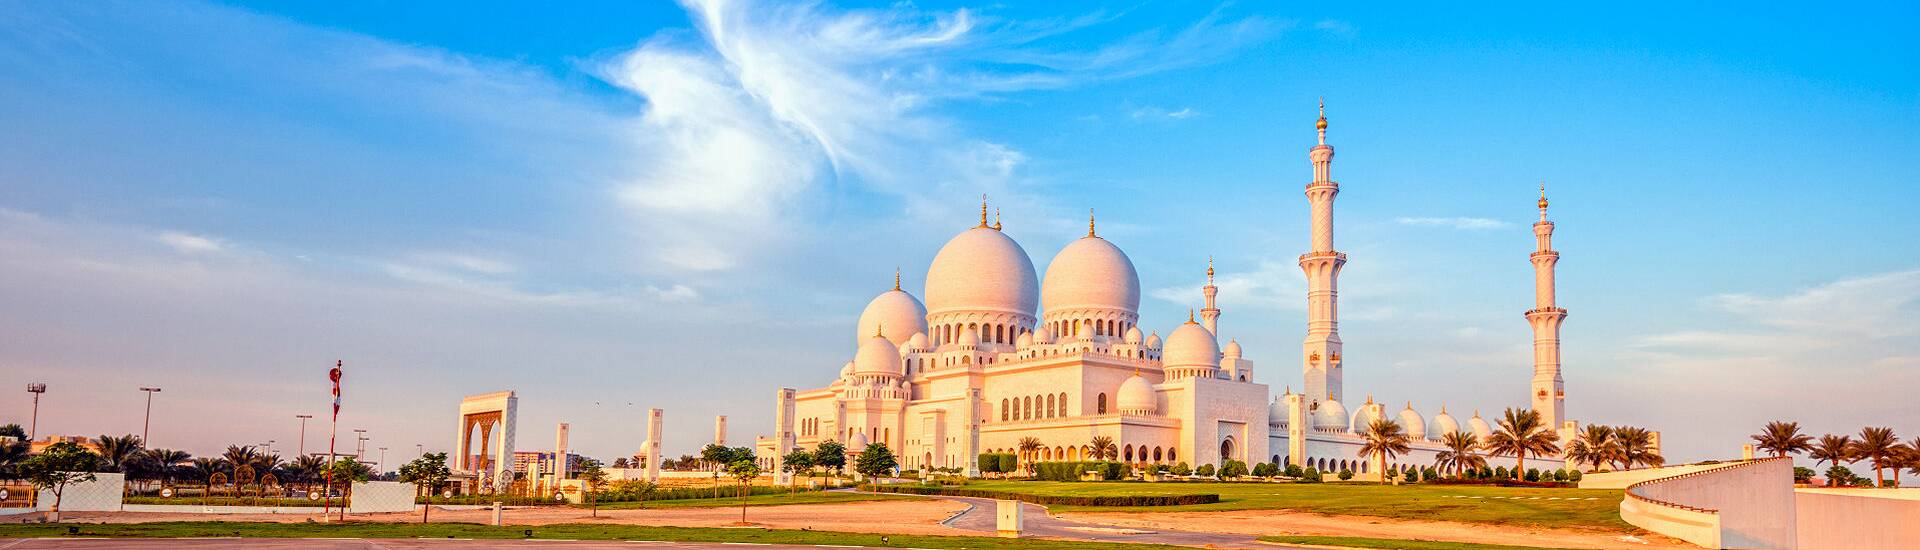 Abu Dhabi entdecken: Die optimale Reisezeit für Moschee, Strand und Wüste